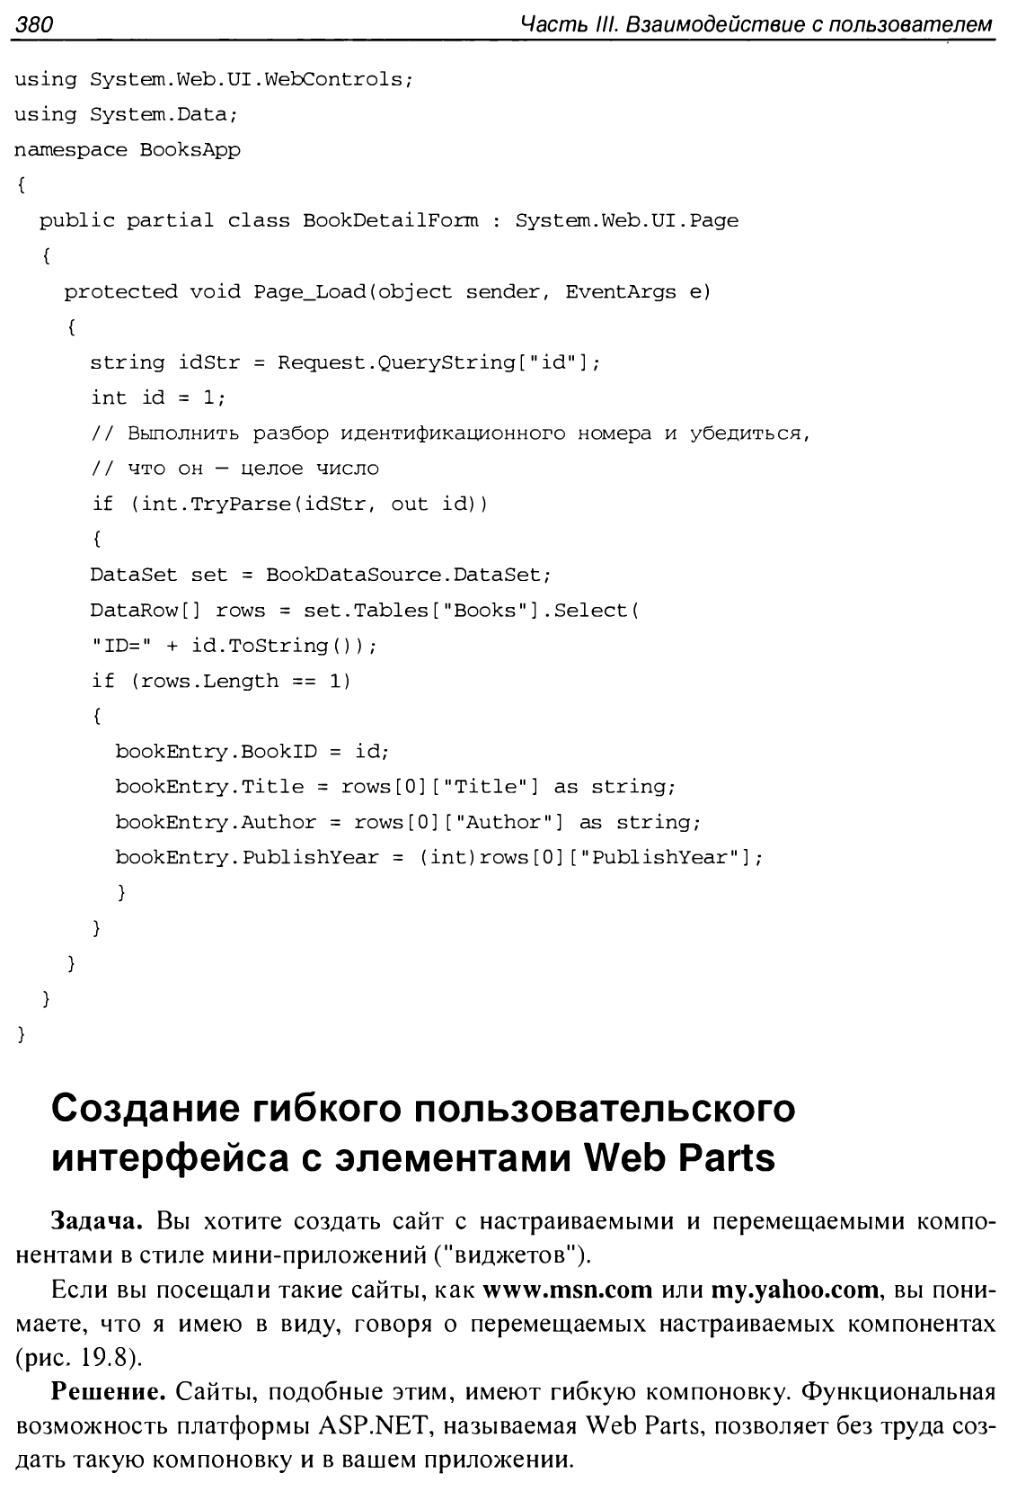 Создание гибкого пользовательского интерфейса с элементами Web Parts